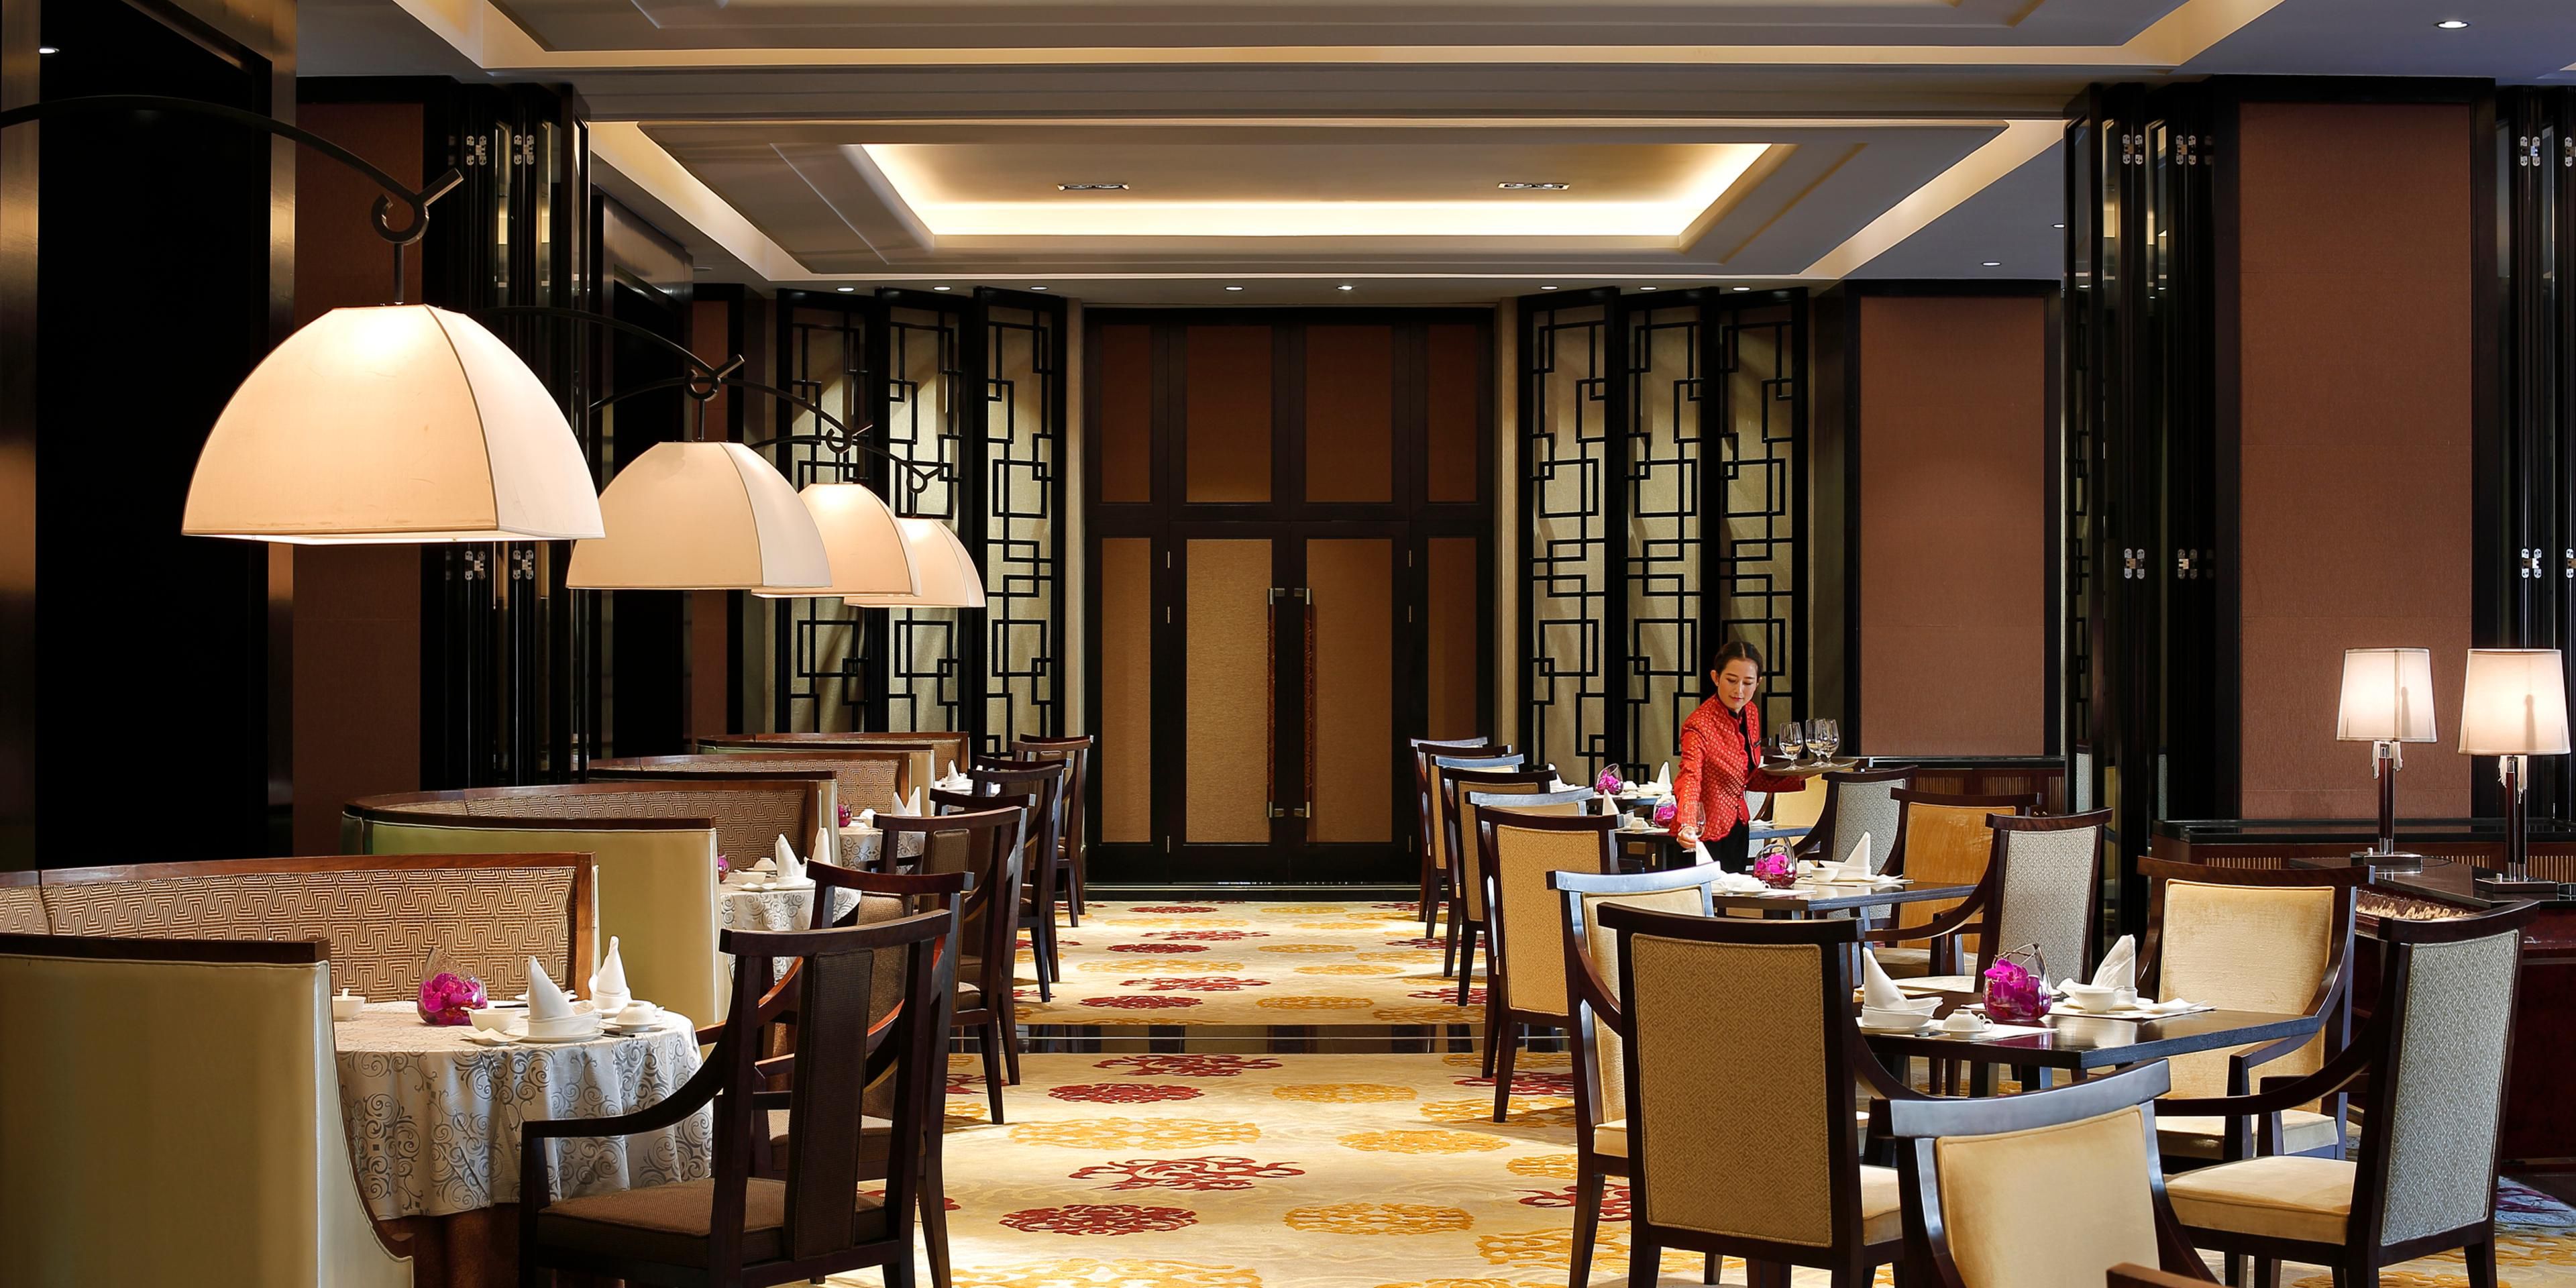 香稻轩中餐厅连续五年获得黑珍珠餐厅奖项，致力于带您品鉴地道正宗的云南佳肴。